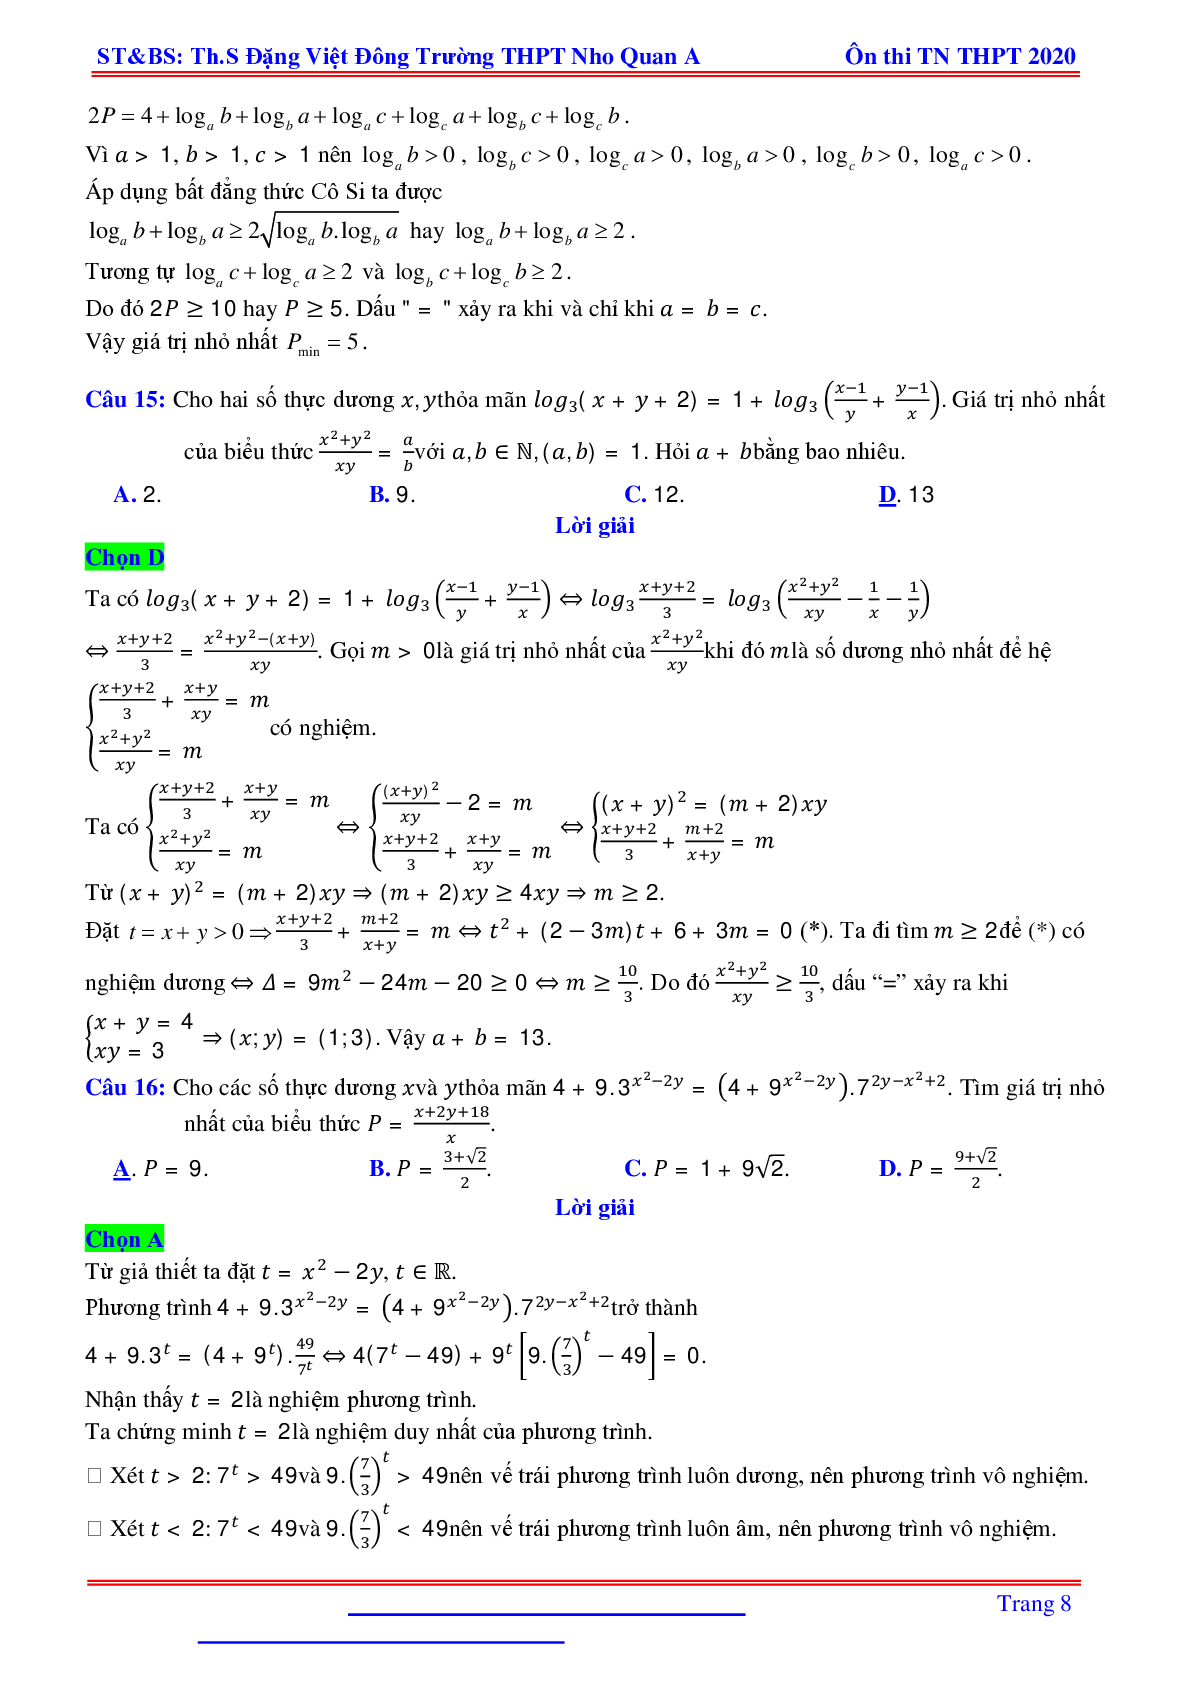 Bài toán min-max liên quan hàm số mũ, logarit nhiều biến - Đặng Việt Đông (trang 8)